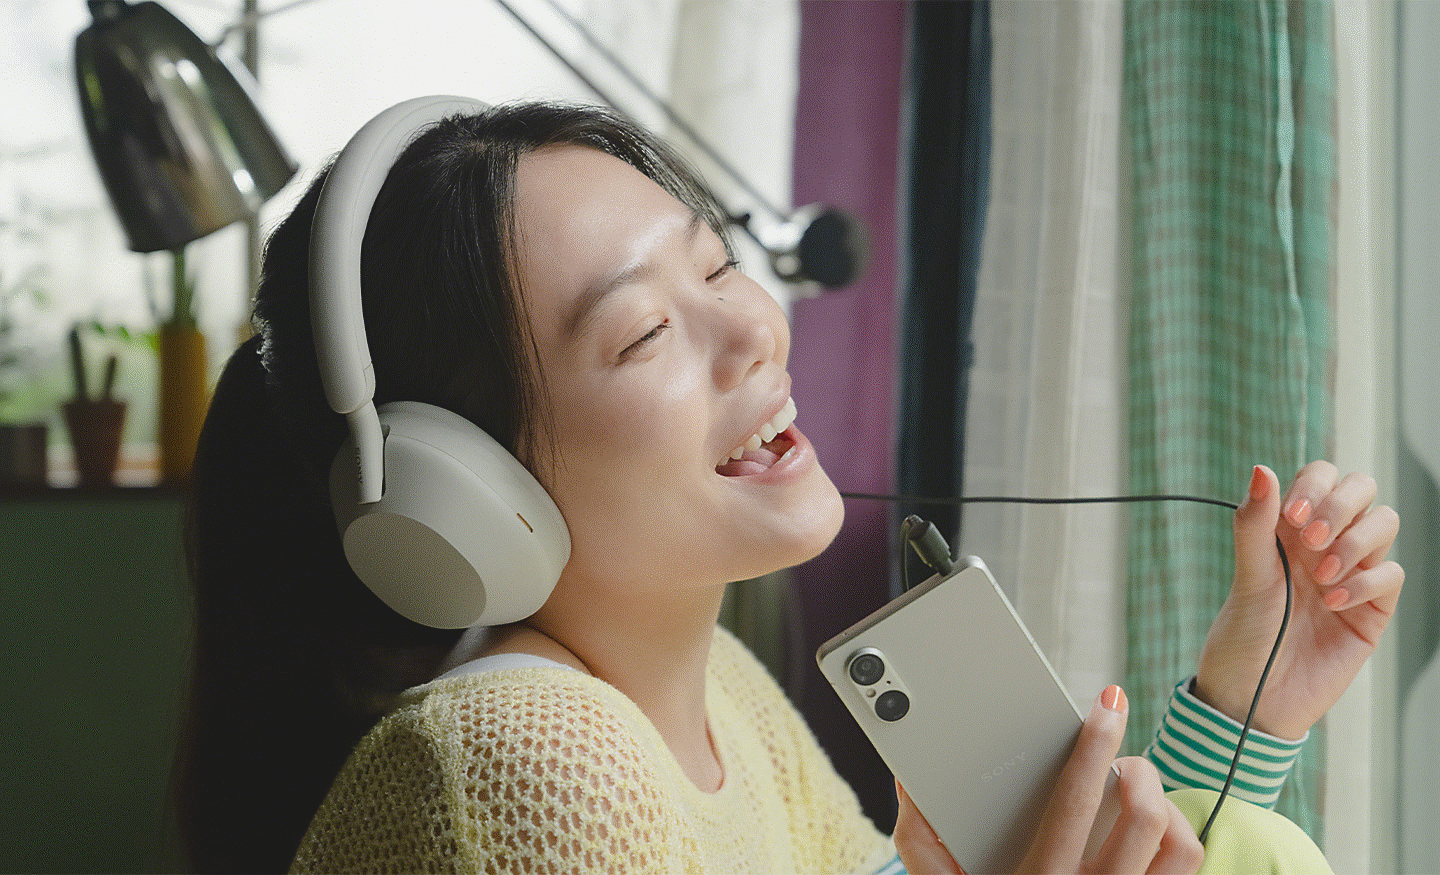 Snímek zpívající osoby s nasazenými sluchátky Sony připojenými ke smartphonu Xperia prostřednictvím kabelu